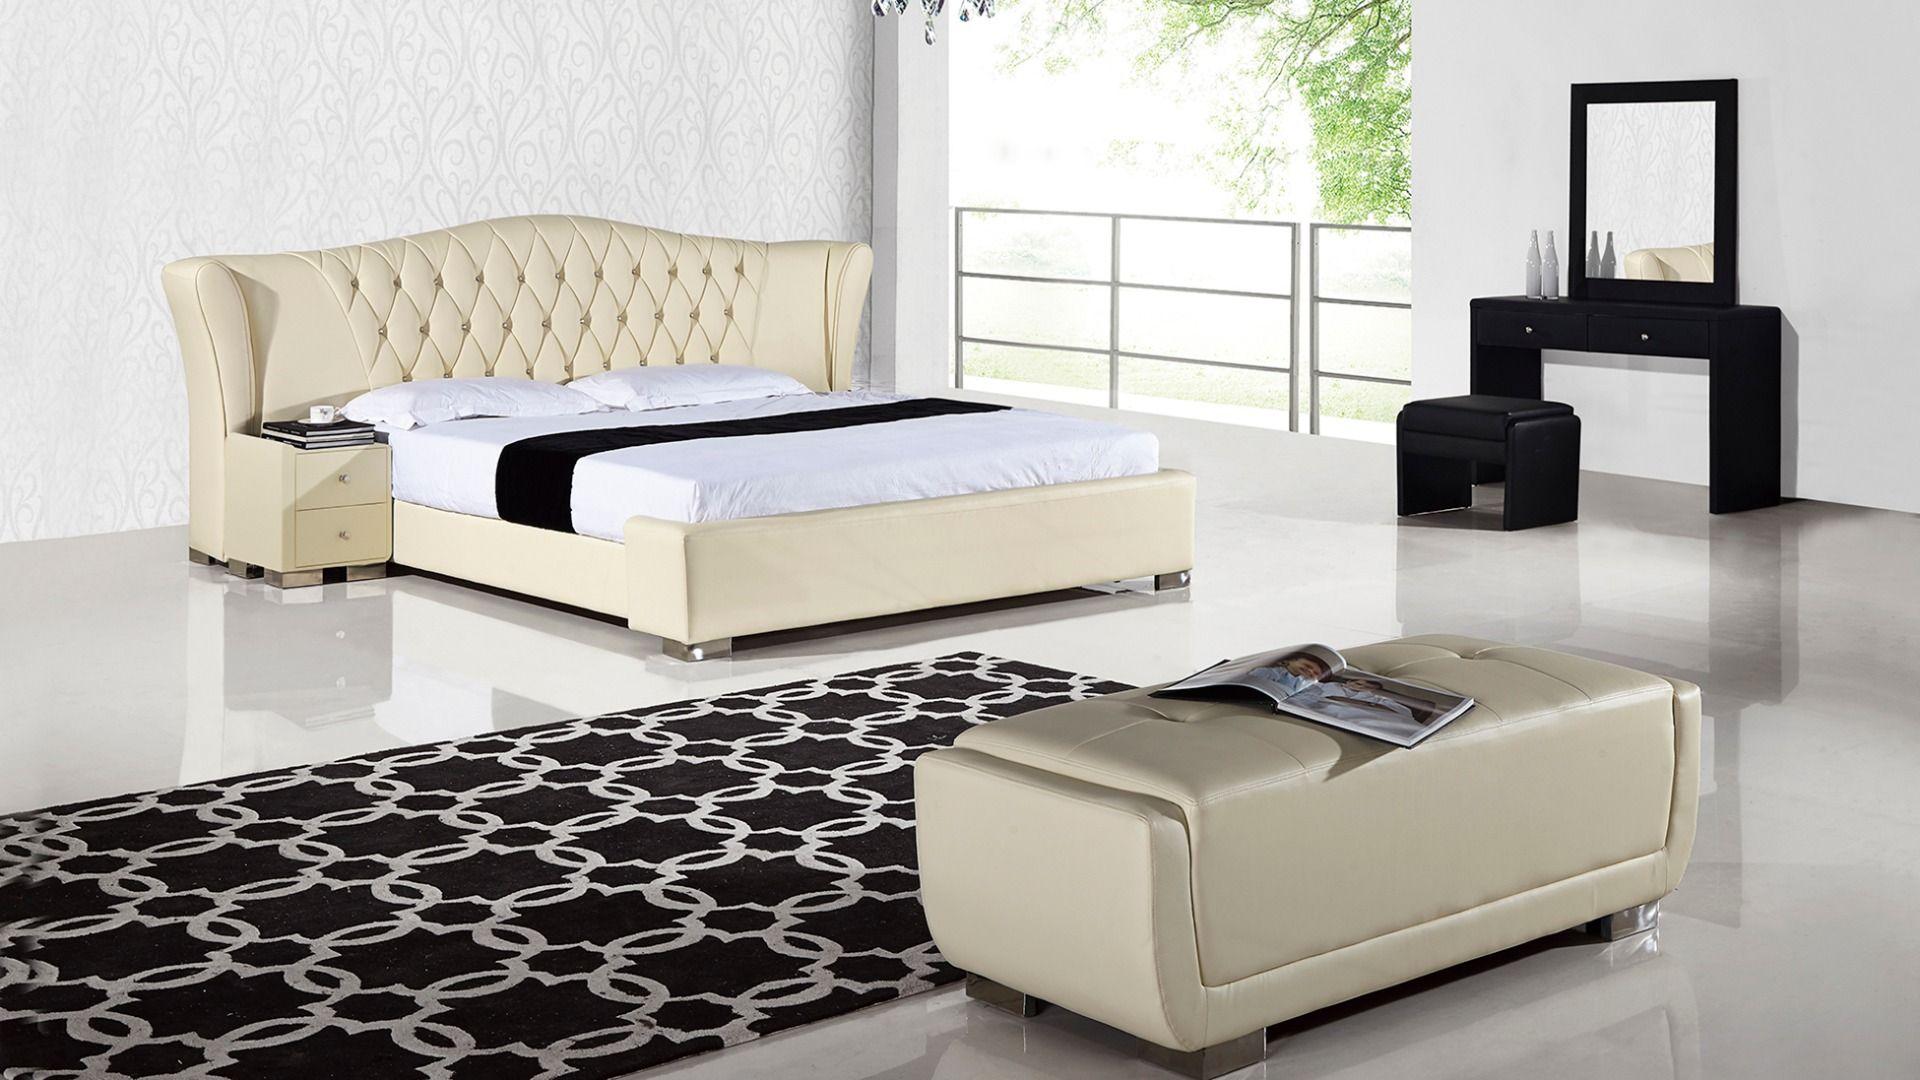 

    
B-D028-CRM-CK-3PC American Eagle Furniture Platform Bedroom Set
